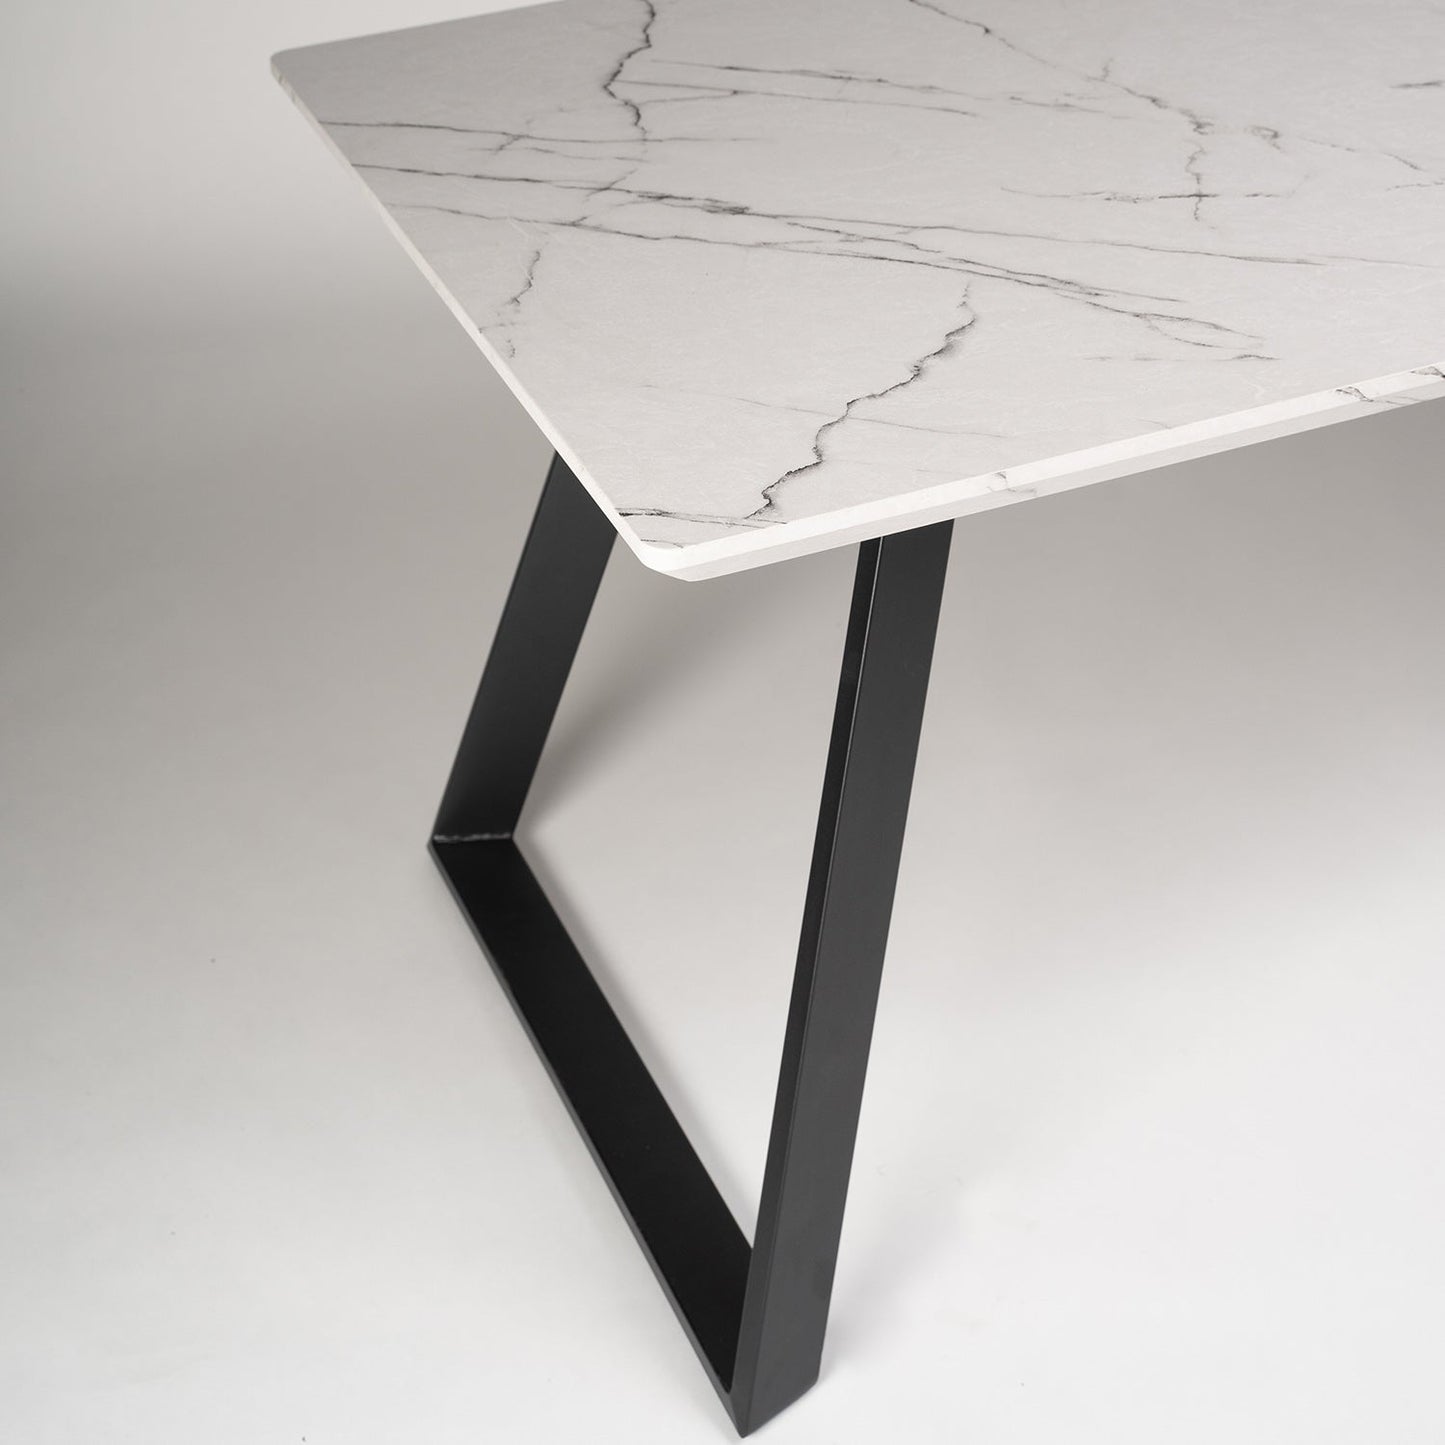 Atlas Marble Effect dining table - metal legs